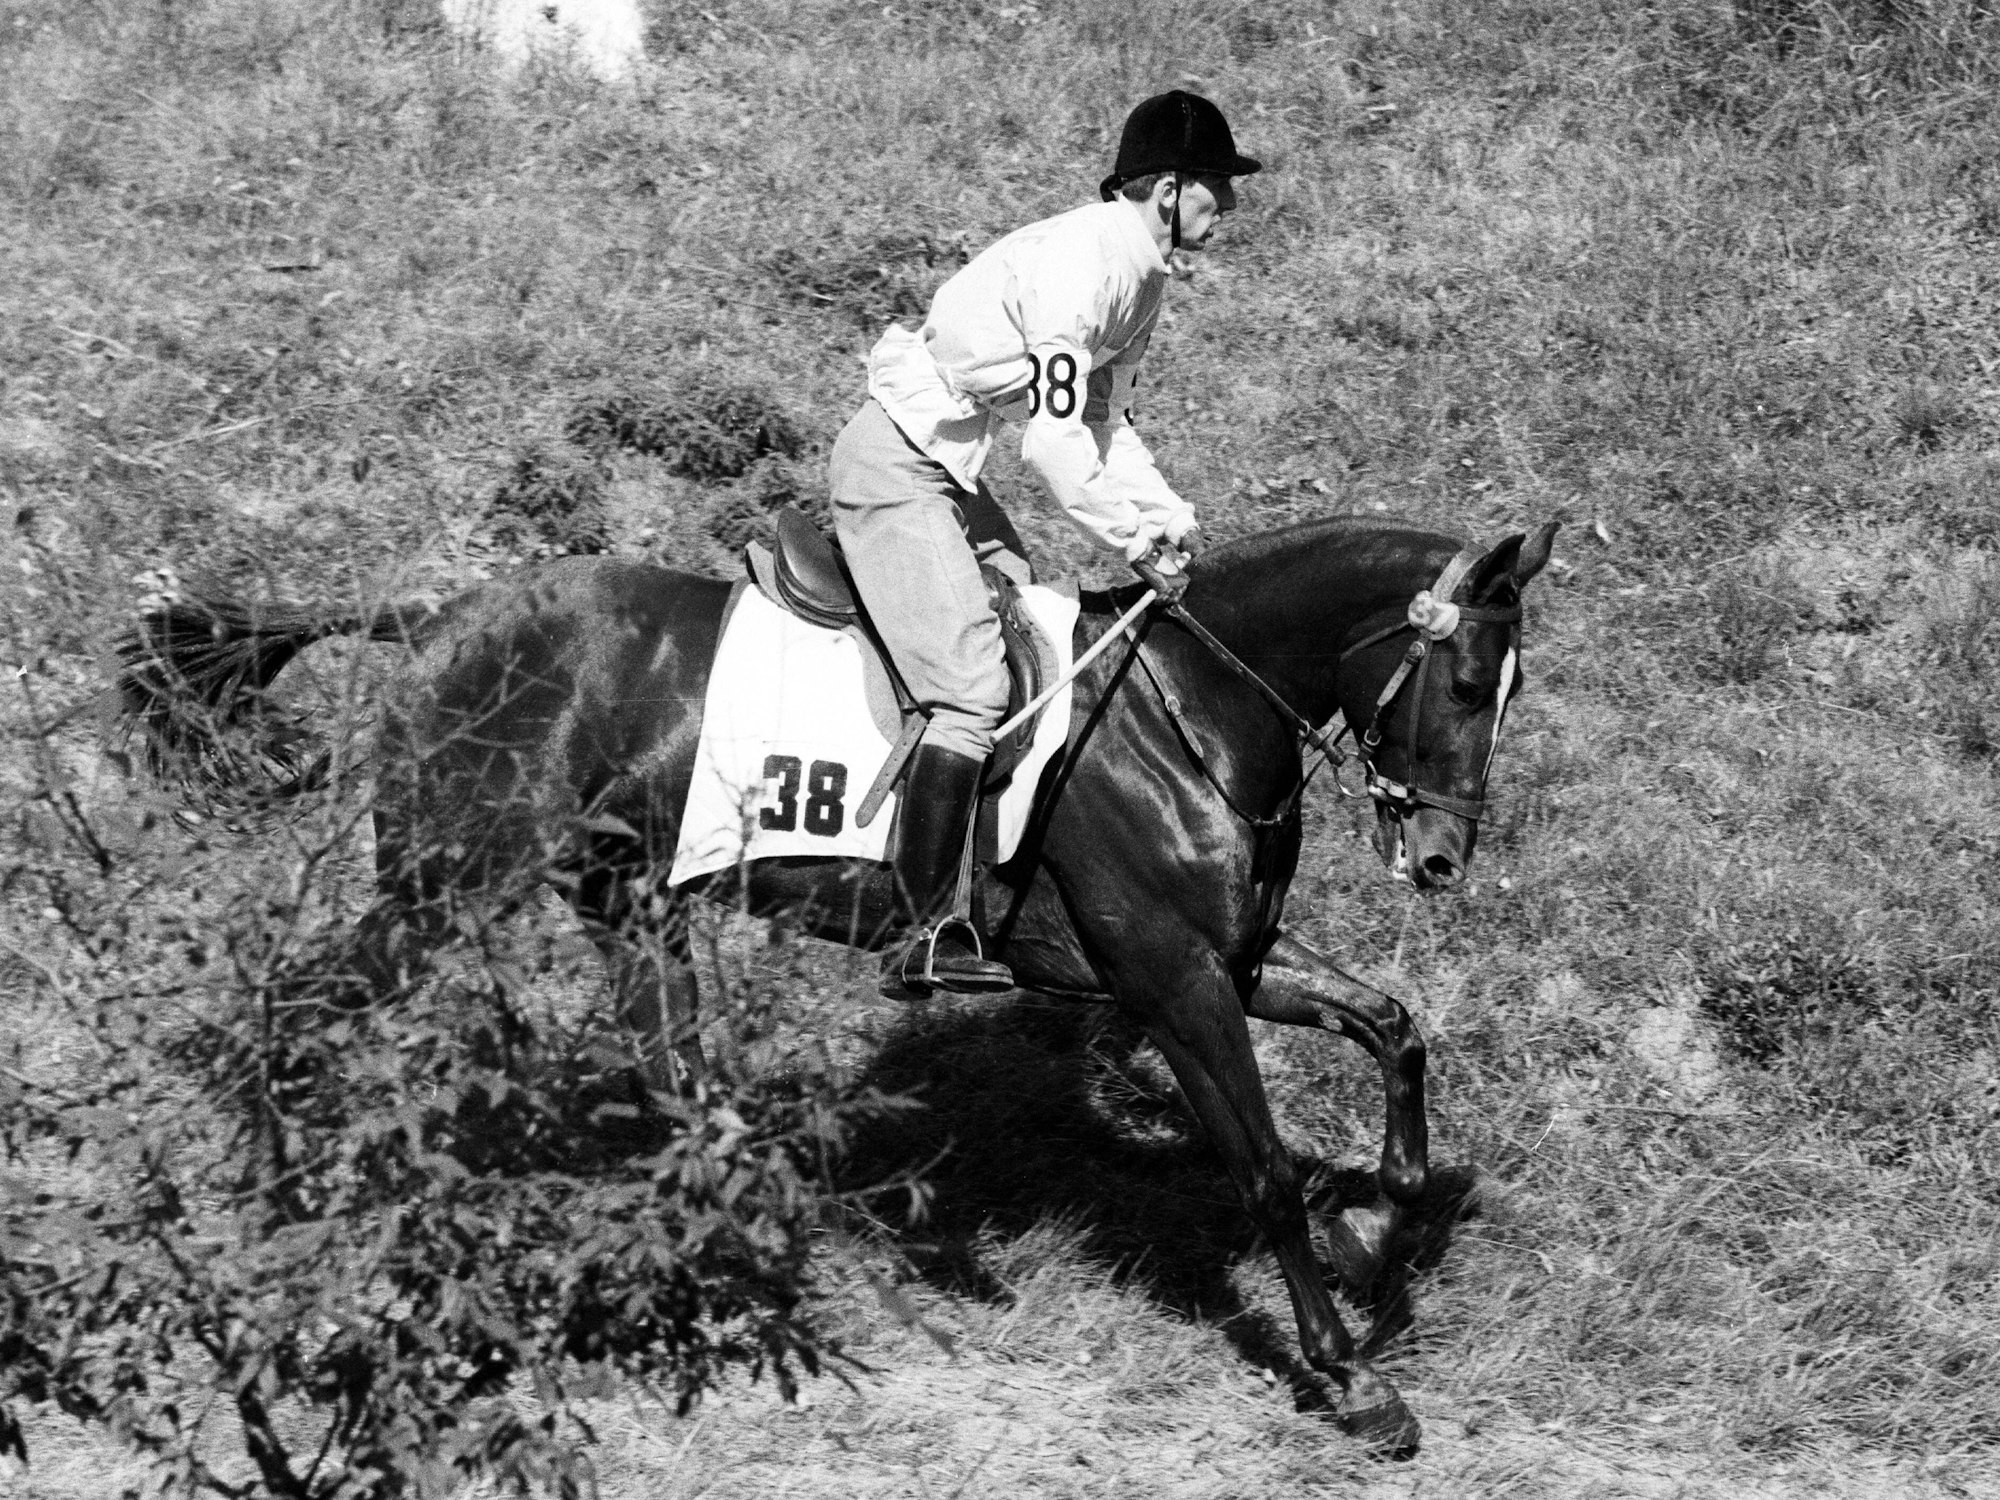 Hans Gunnar Liljenwall reitet auf seinem Pferd.